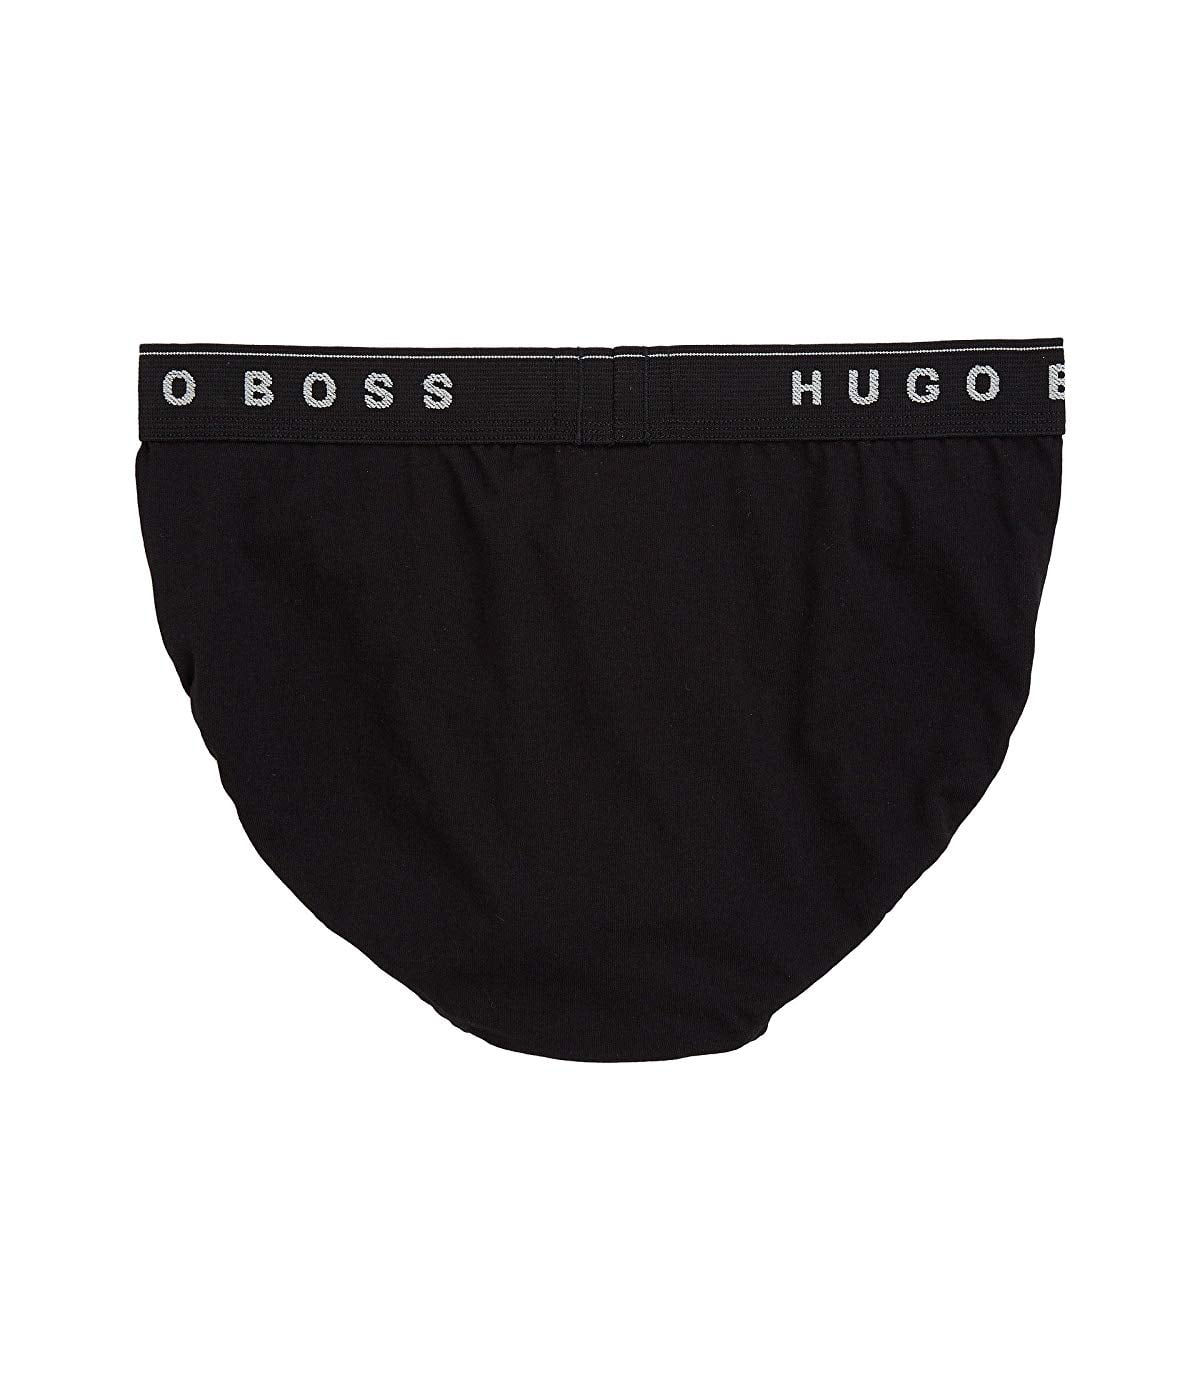 BOSS HUGO BOSS Briefs, 3 Pack - Walmart.com